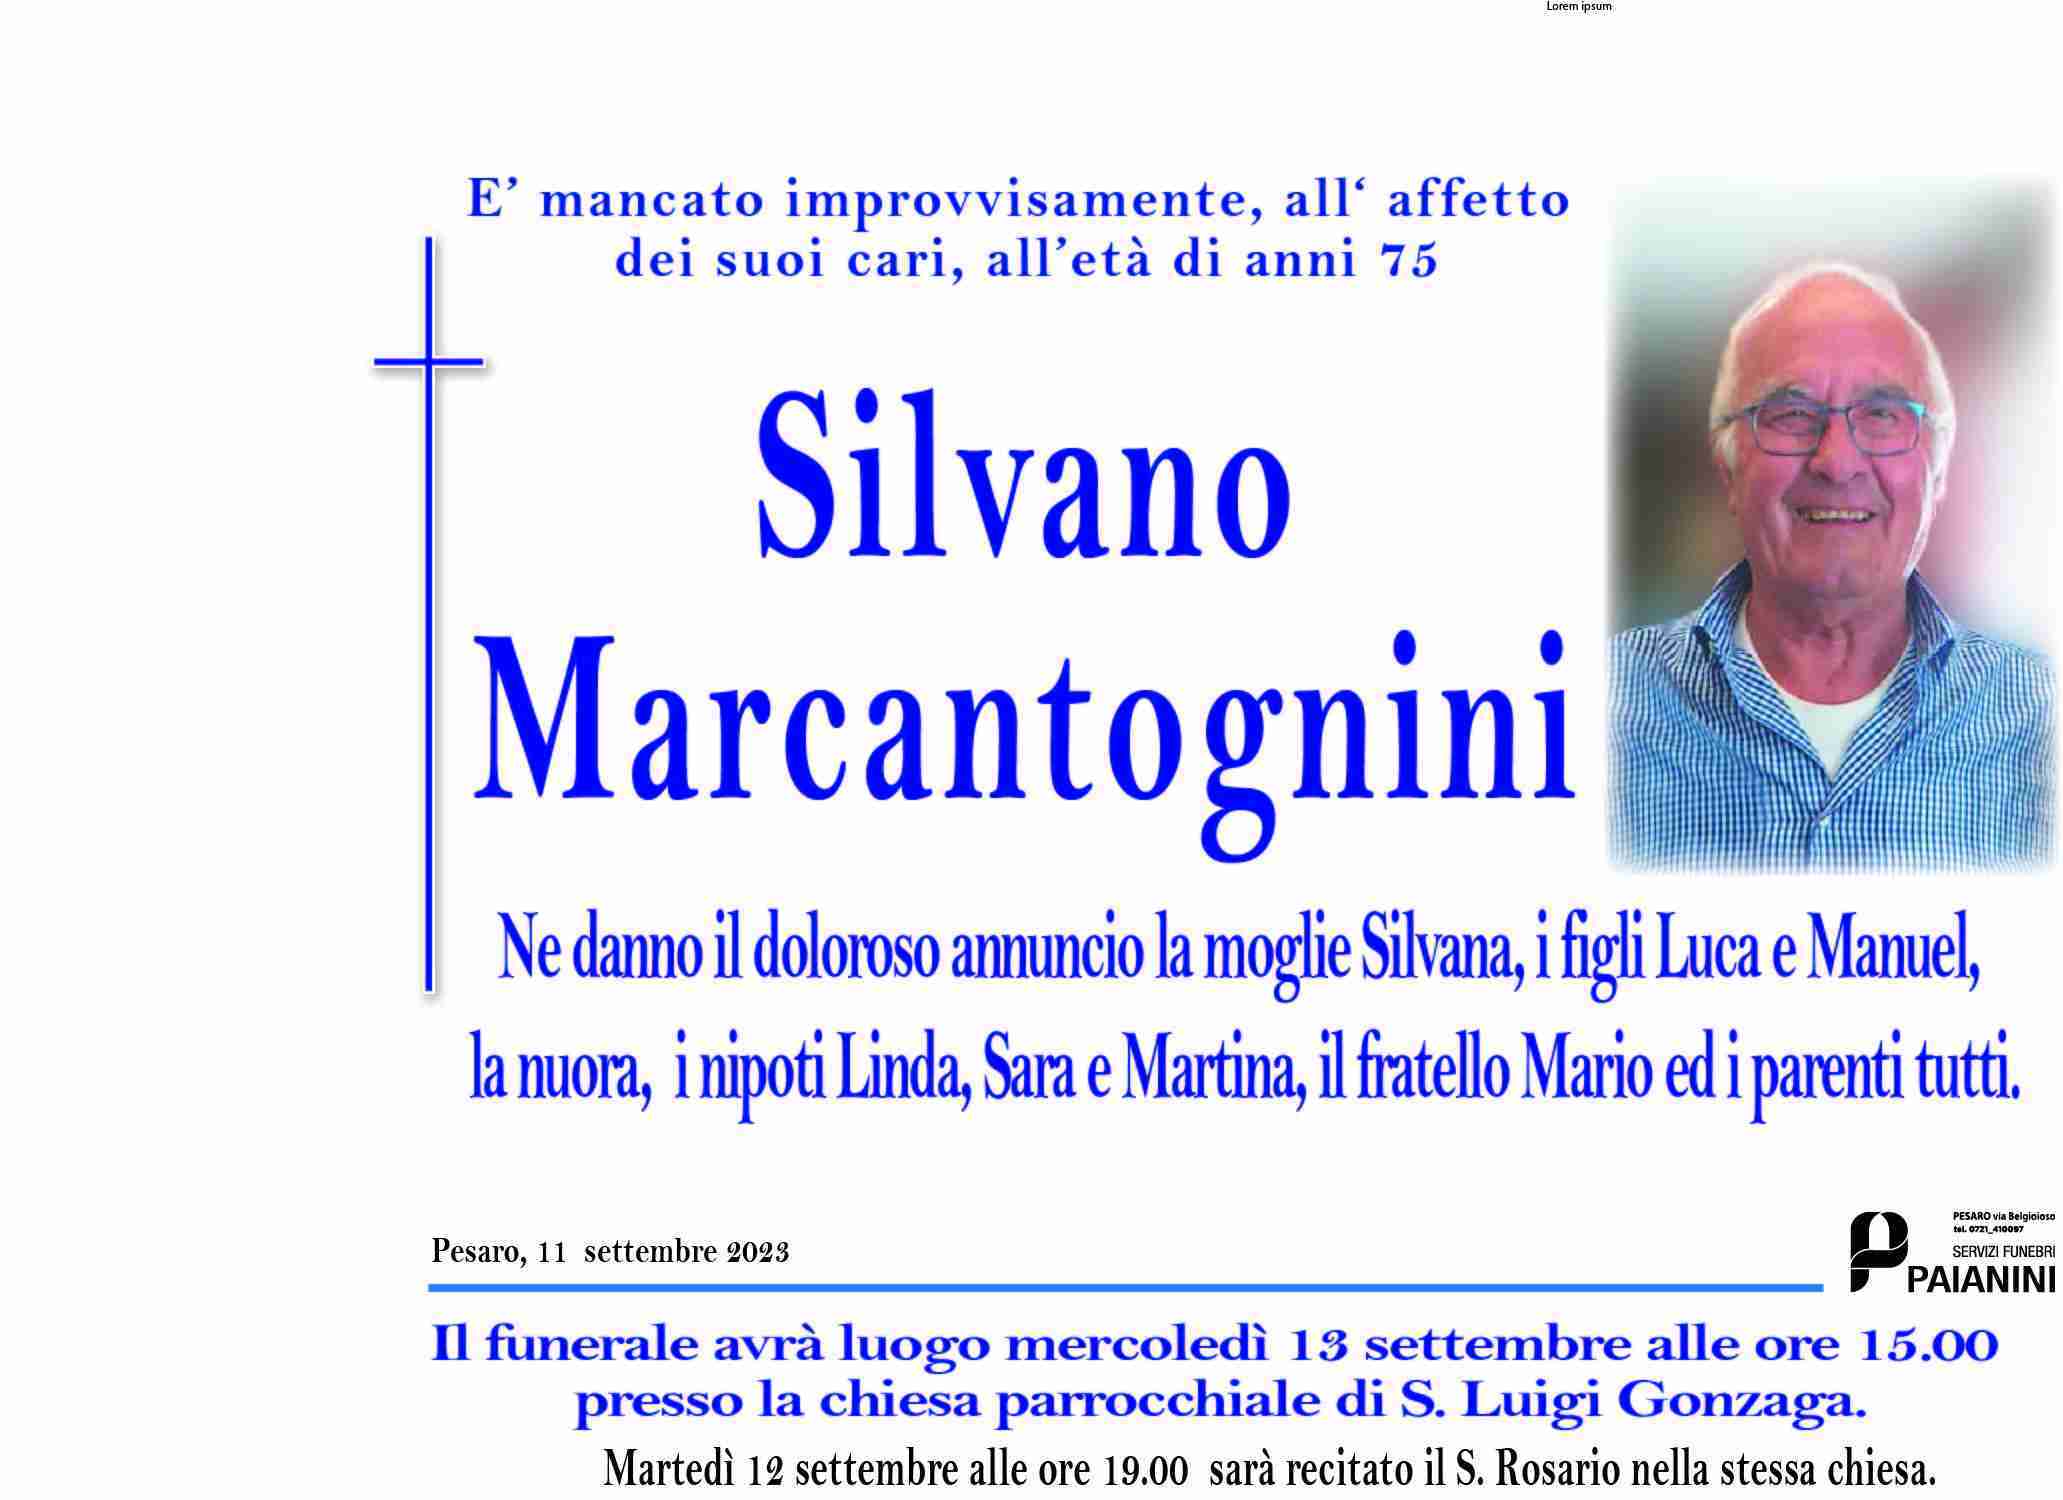 Silvano Marcantognini